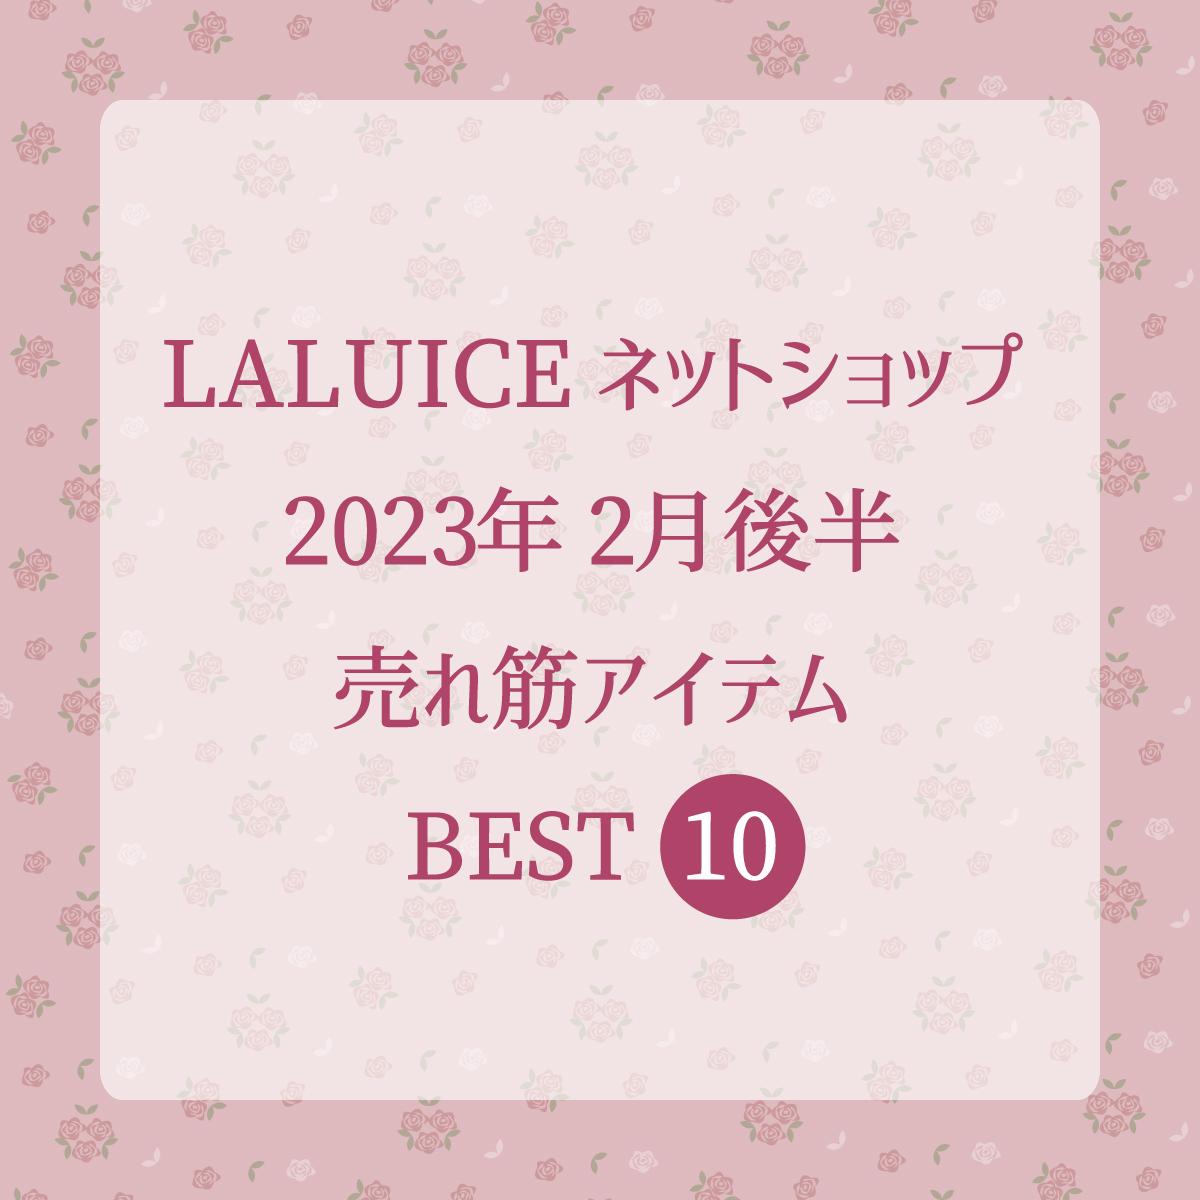 2023年2月後半(2/16～2/28)LALUICEネットショップ売れ筋アイテム BEST10